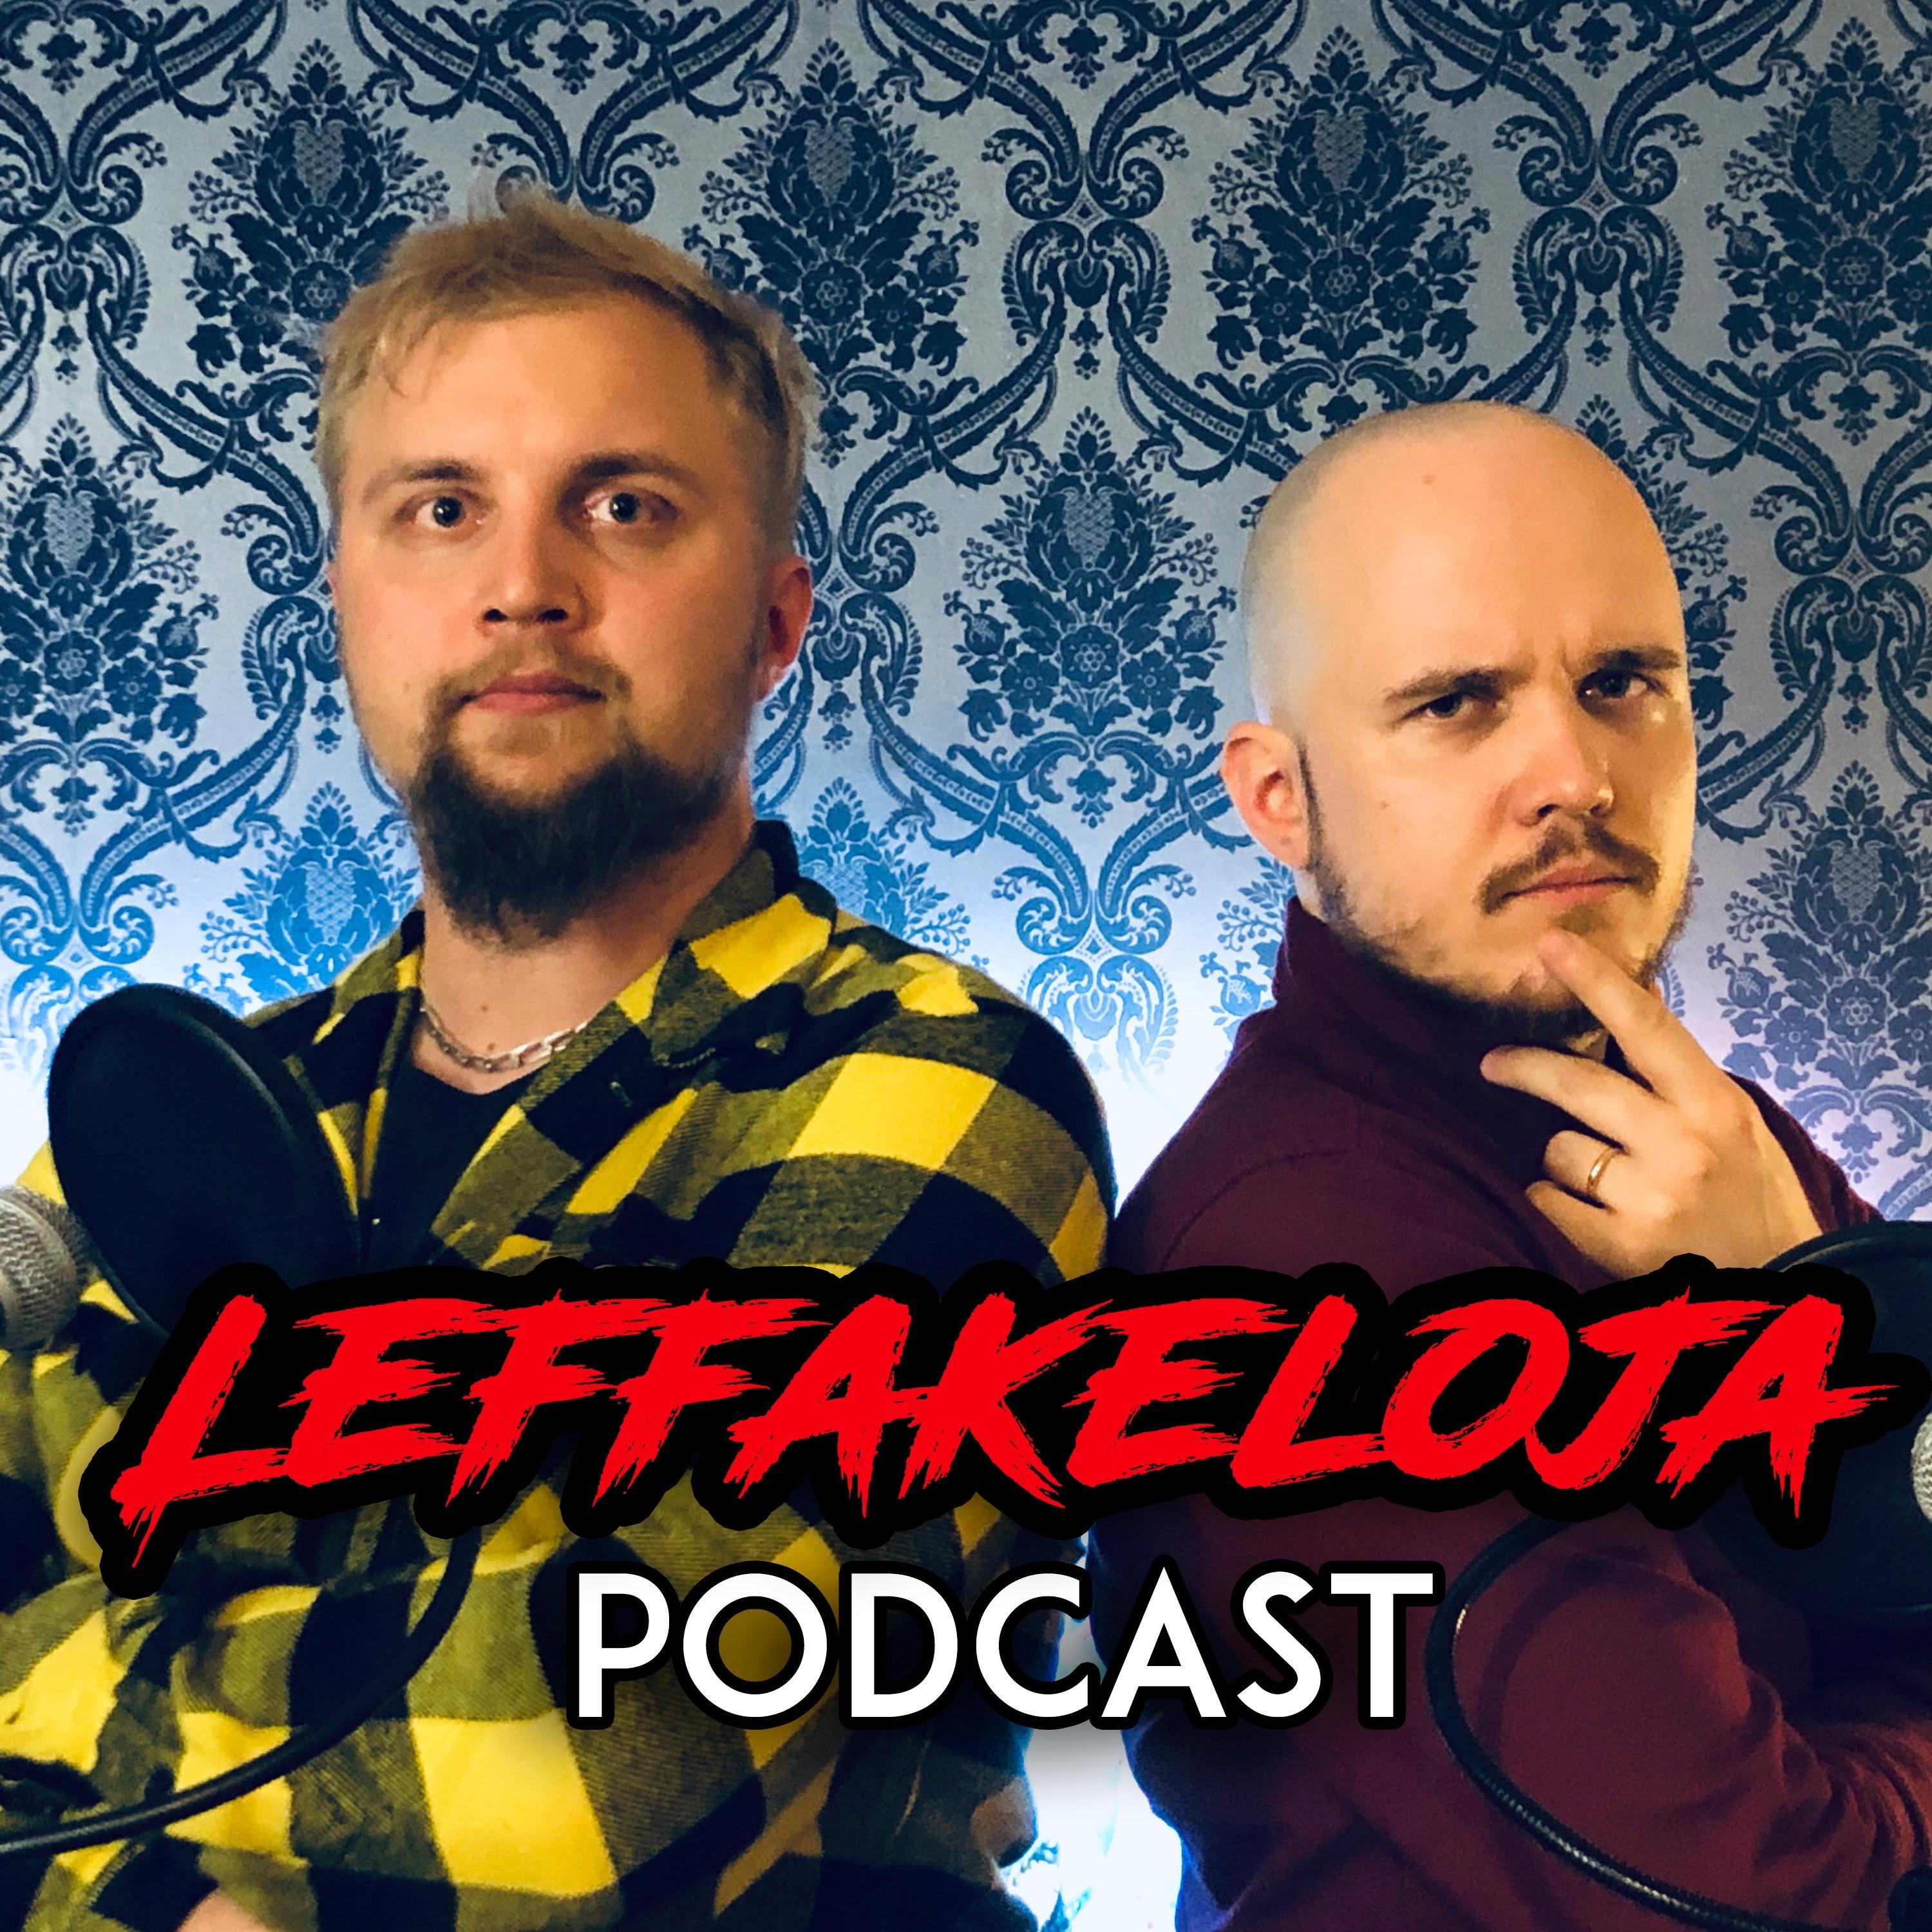 Leffakeloja Podcast